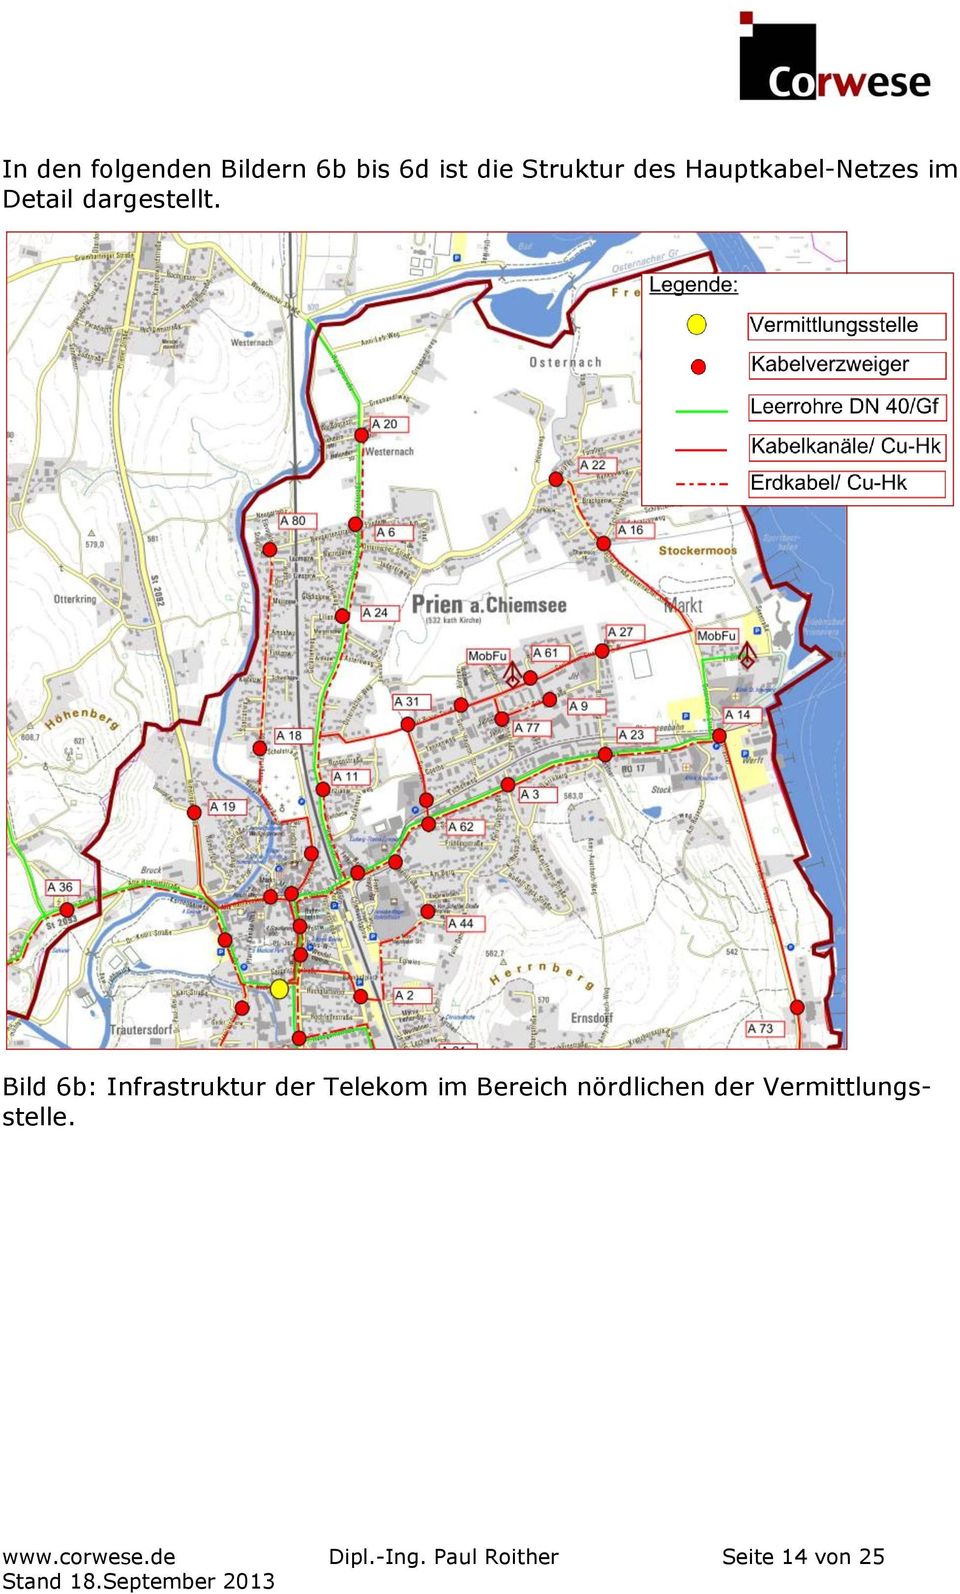 Bild 6b: Infrastruktur der Telekom im Bereich